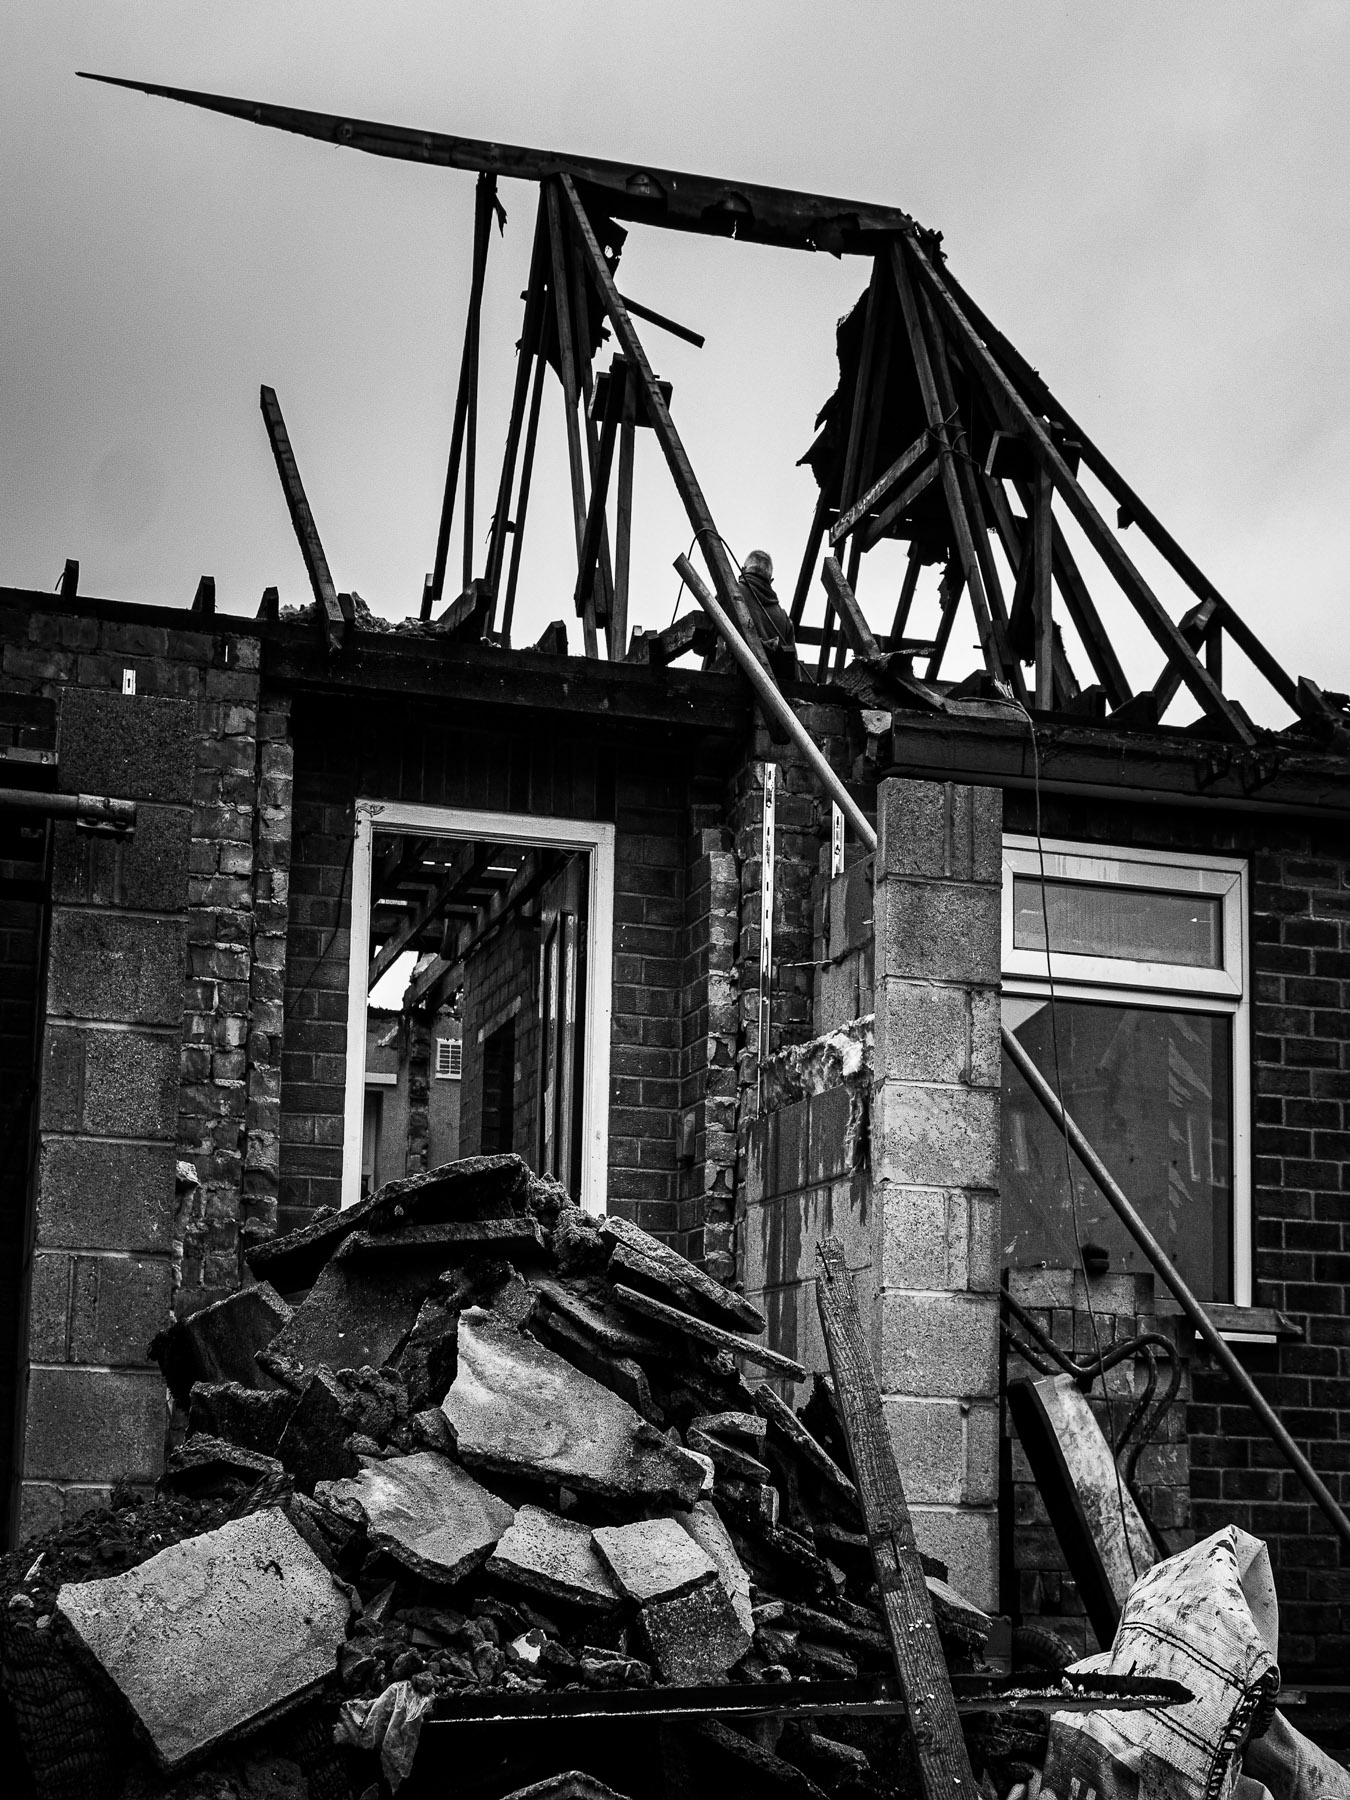 Original House Destroyed, Destruction, Bryan Stanton